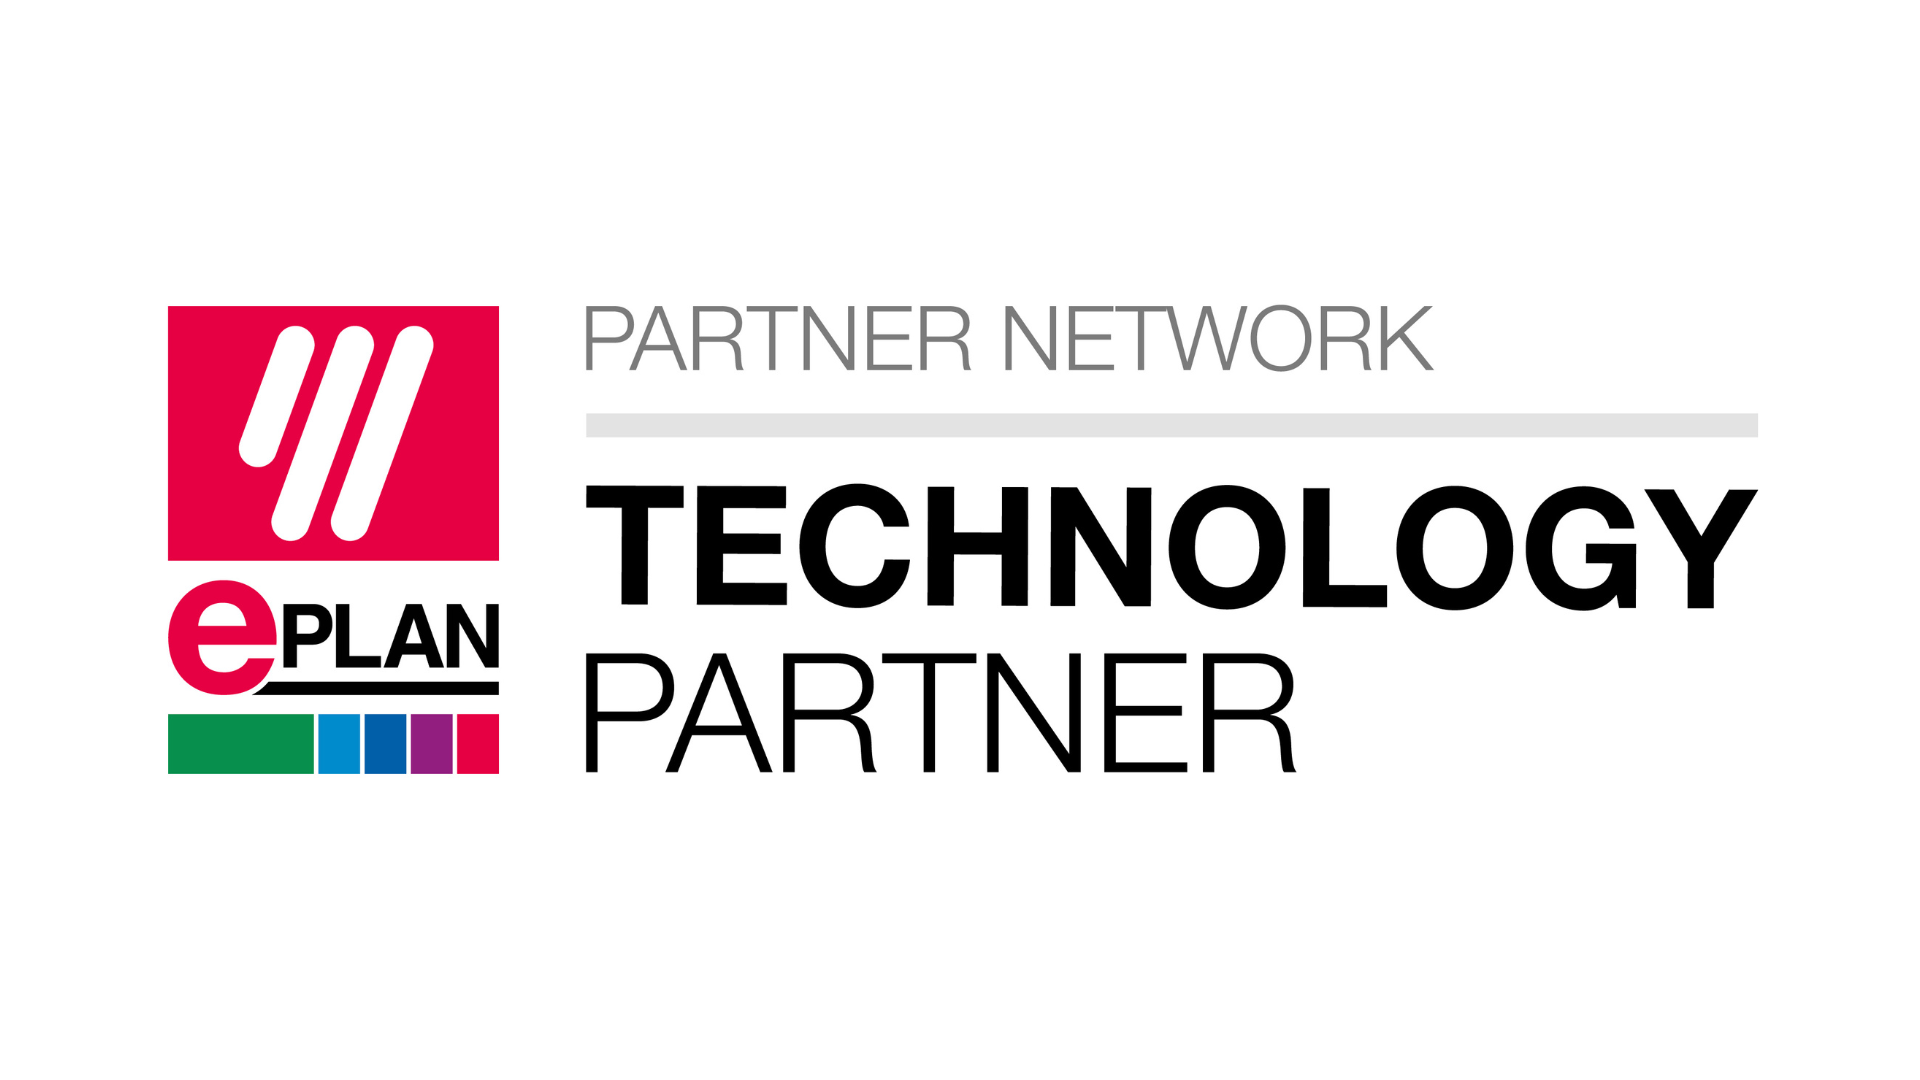 Technology Partner Network ePLAN